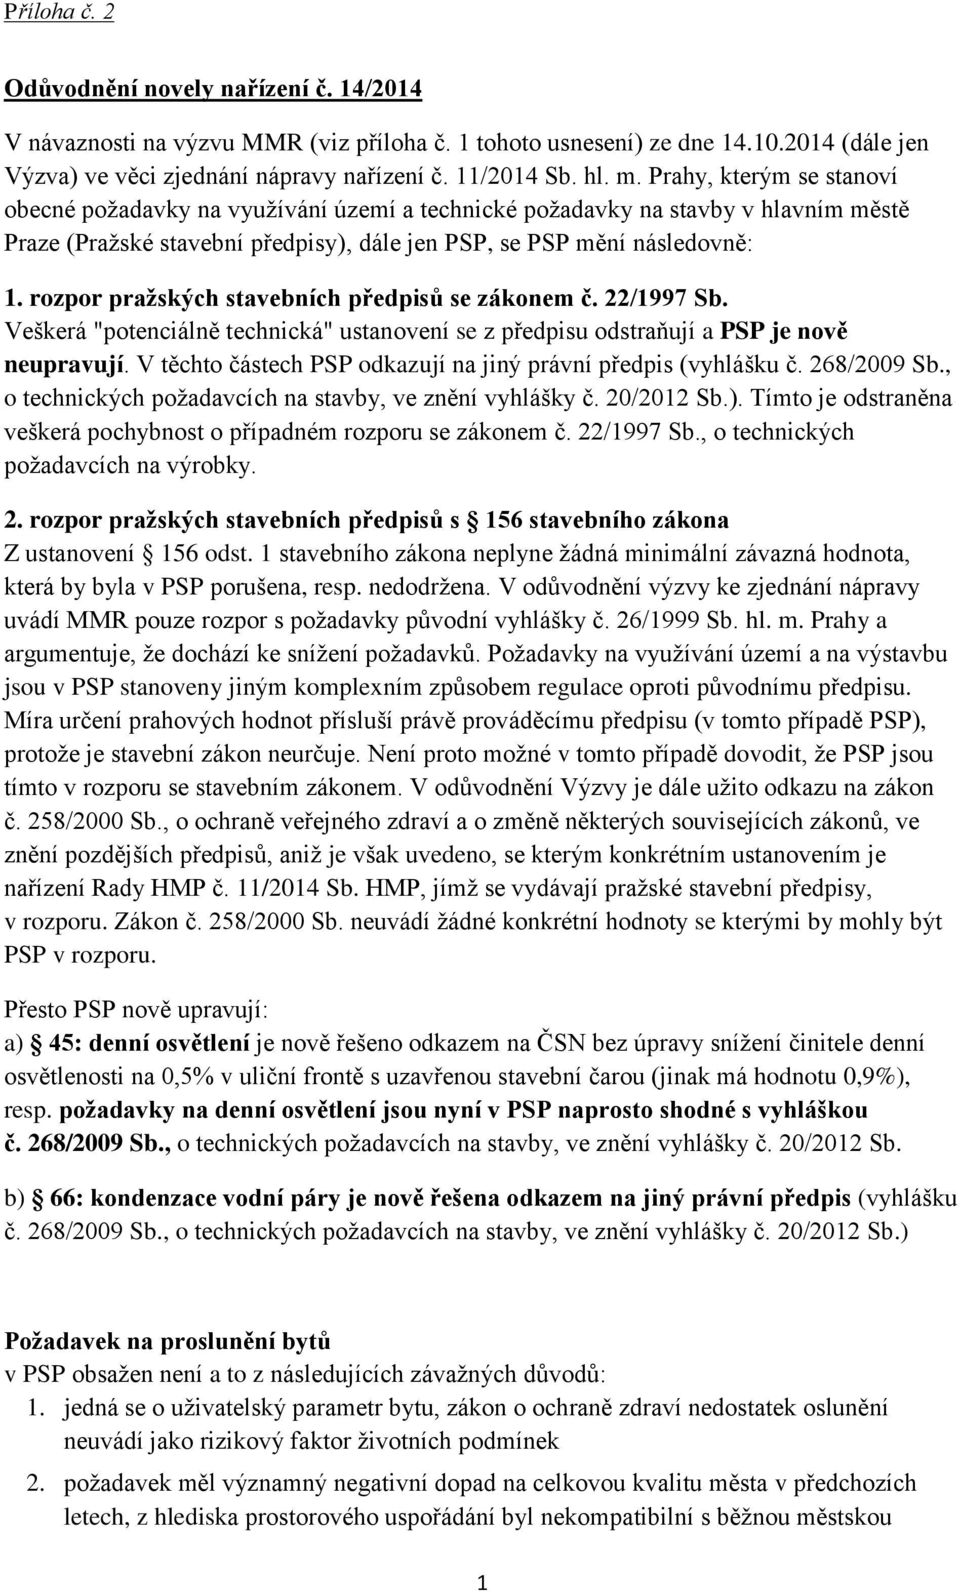 rozpor pražských stavebních předpisů se zákonem č. 22/1997 Sb. Veškerá "potenciálně technická" ustanovení se z předpisu odstraňují a PSP je nově neupravují.